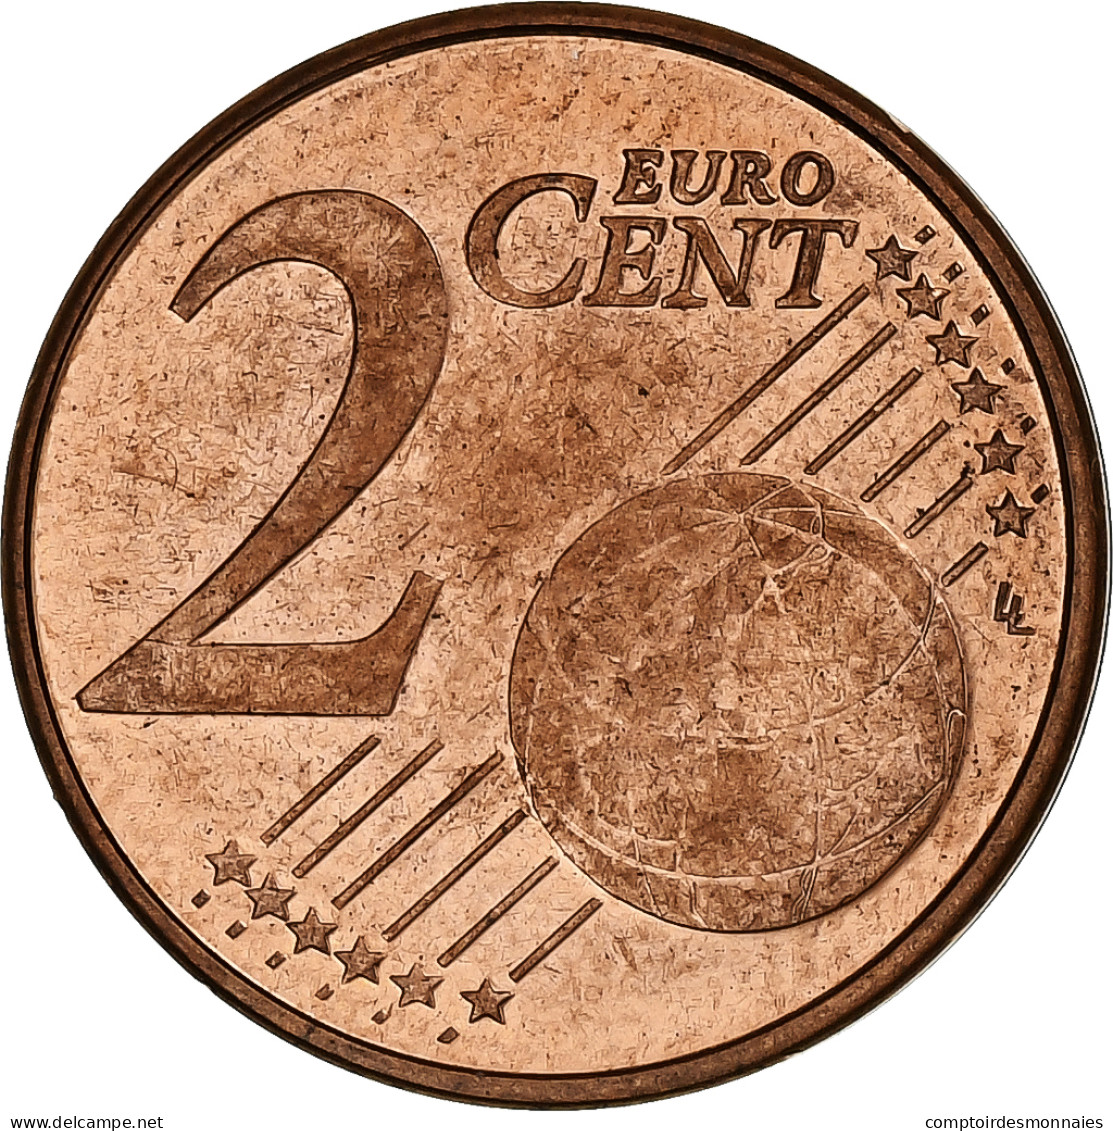 Belgique, Albert II, 2 Euro Cent, 2003, Bruxelles, SUP, Cuivre Plaqué Acier - Bélgica